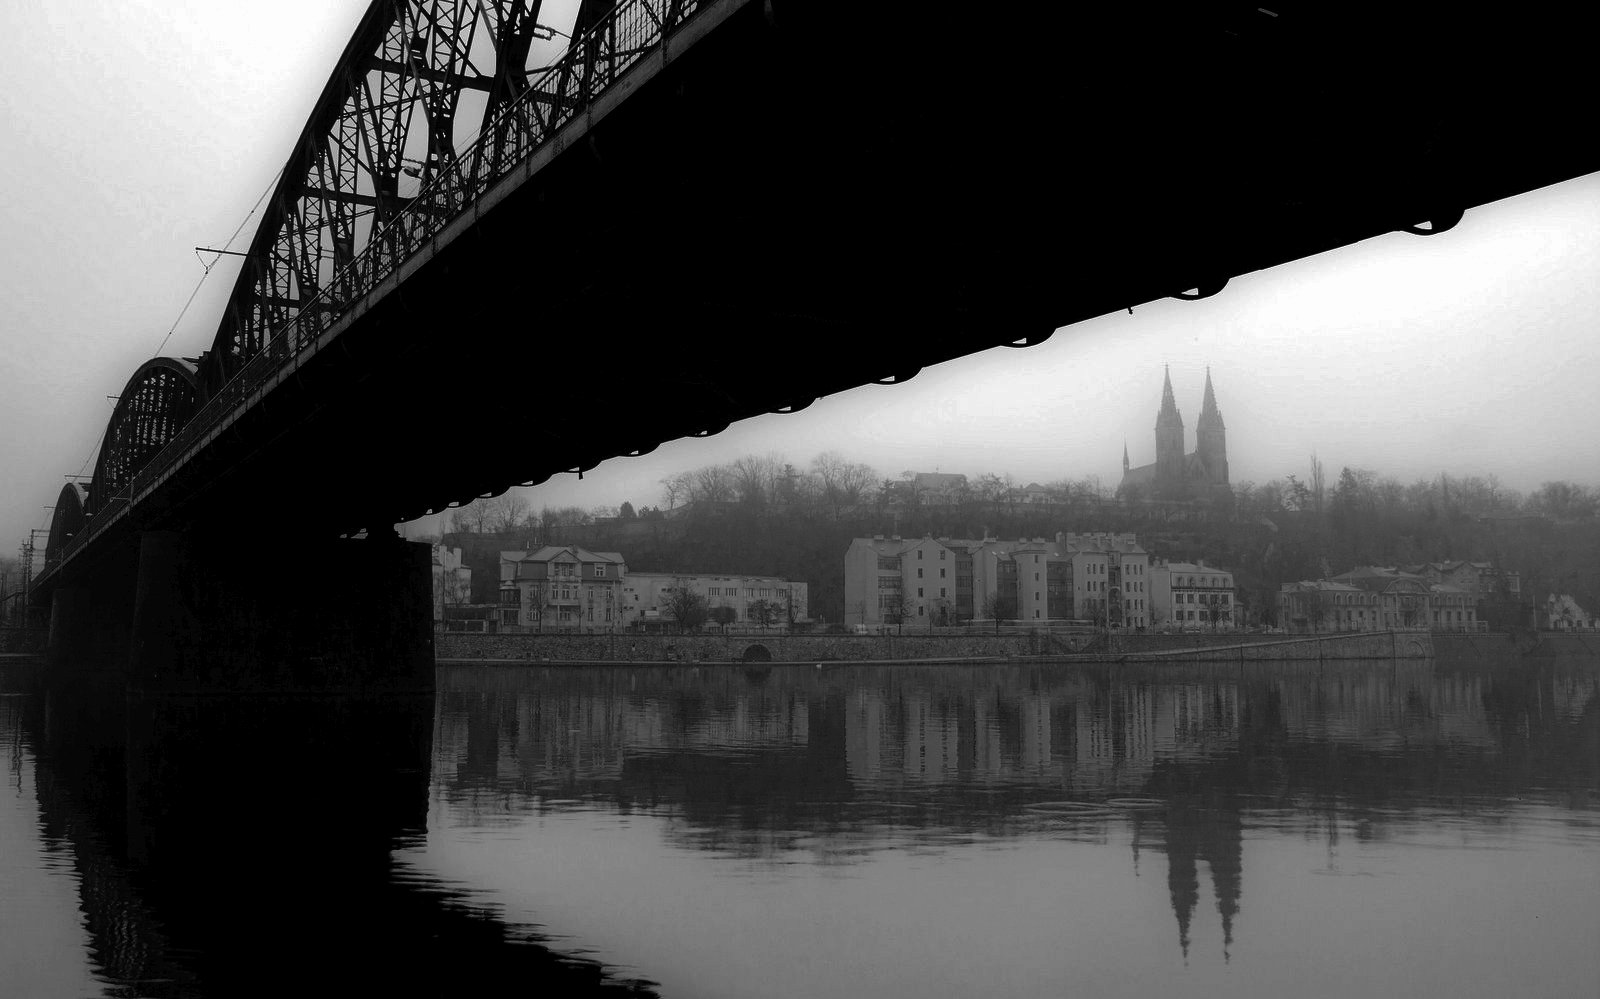 kostel, Vyšehrad, železniční most, most pro vlak, řeka, mlha / foto Jan Kovář